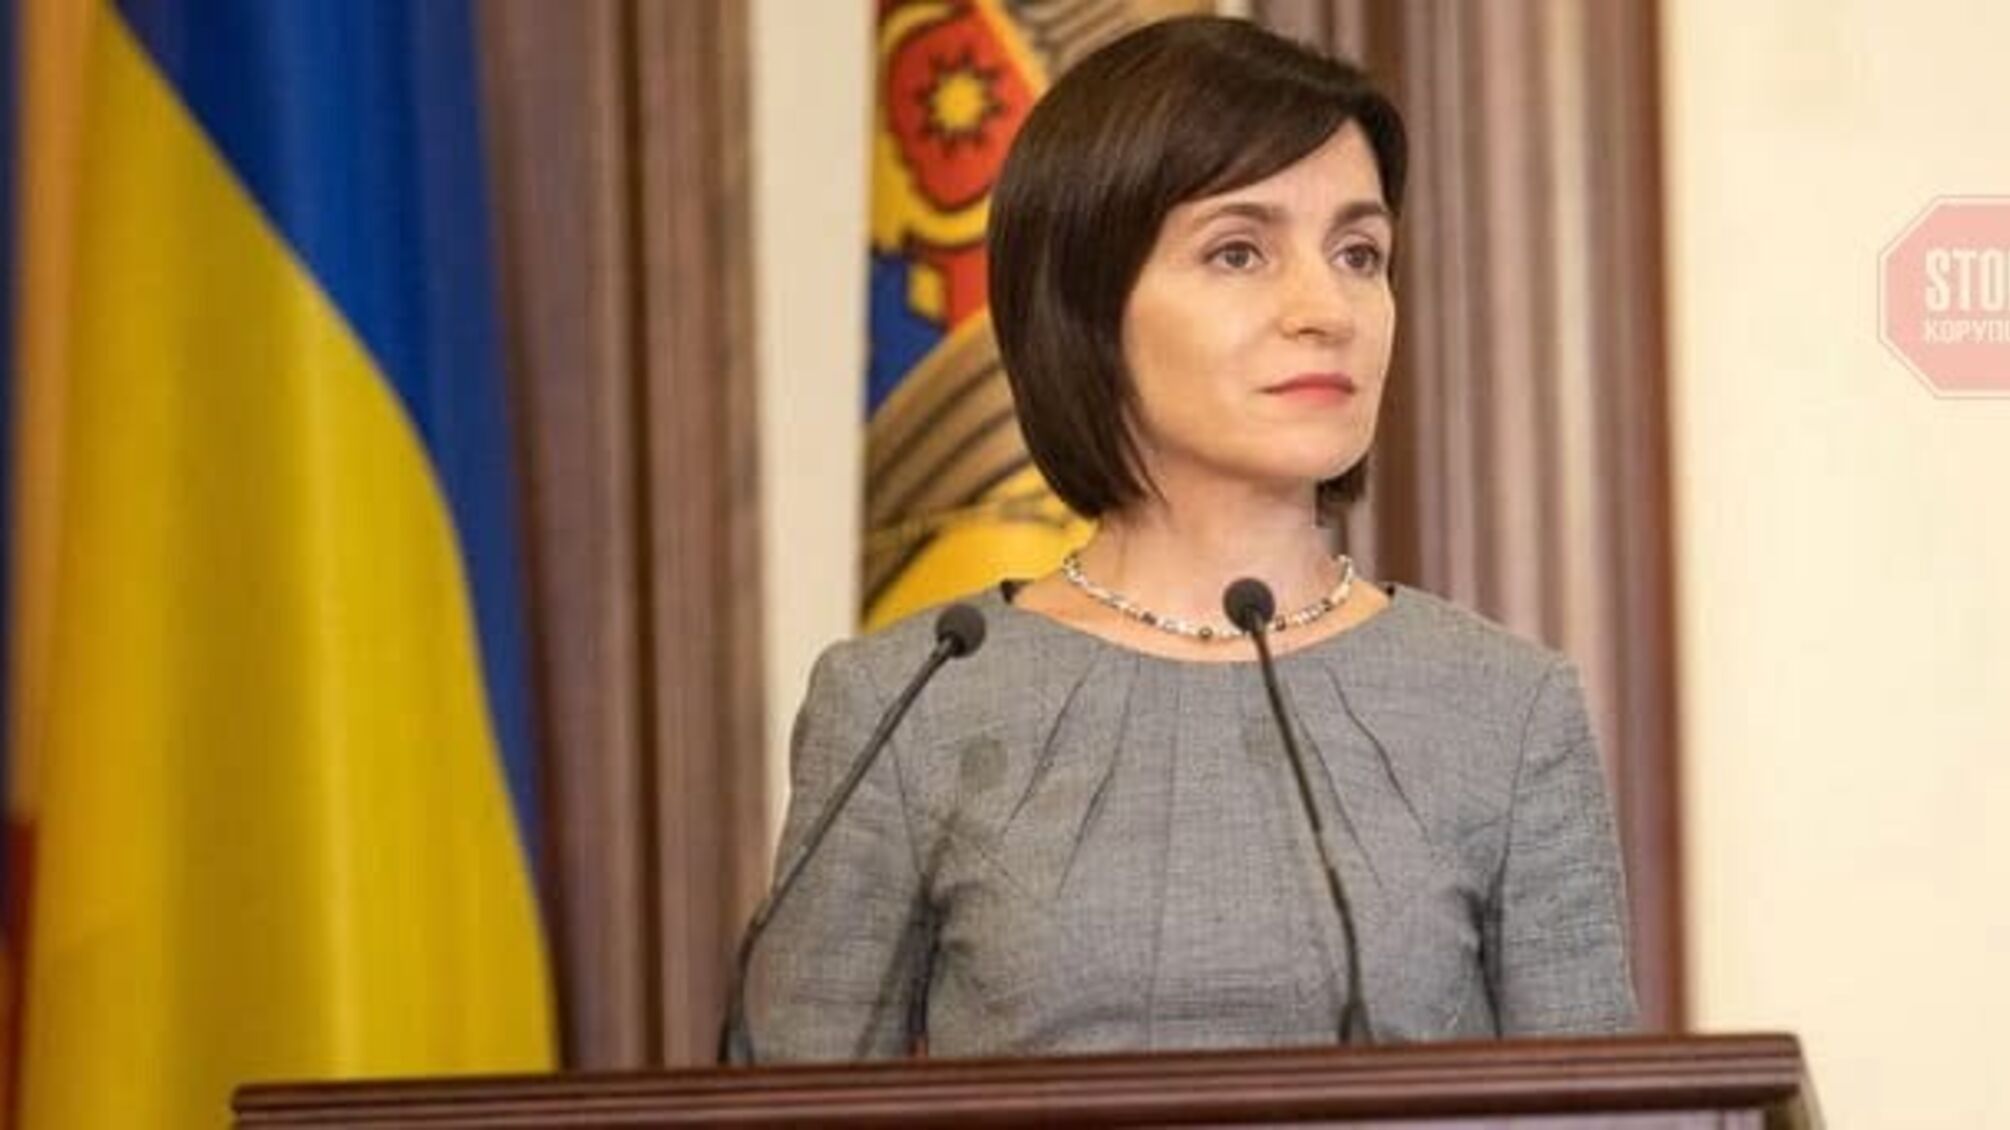 Парламентські вибори у Молдові: партія Санду отримує конституційну більшість